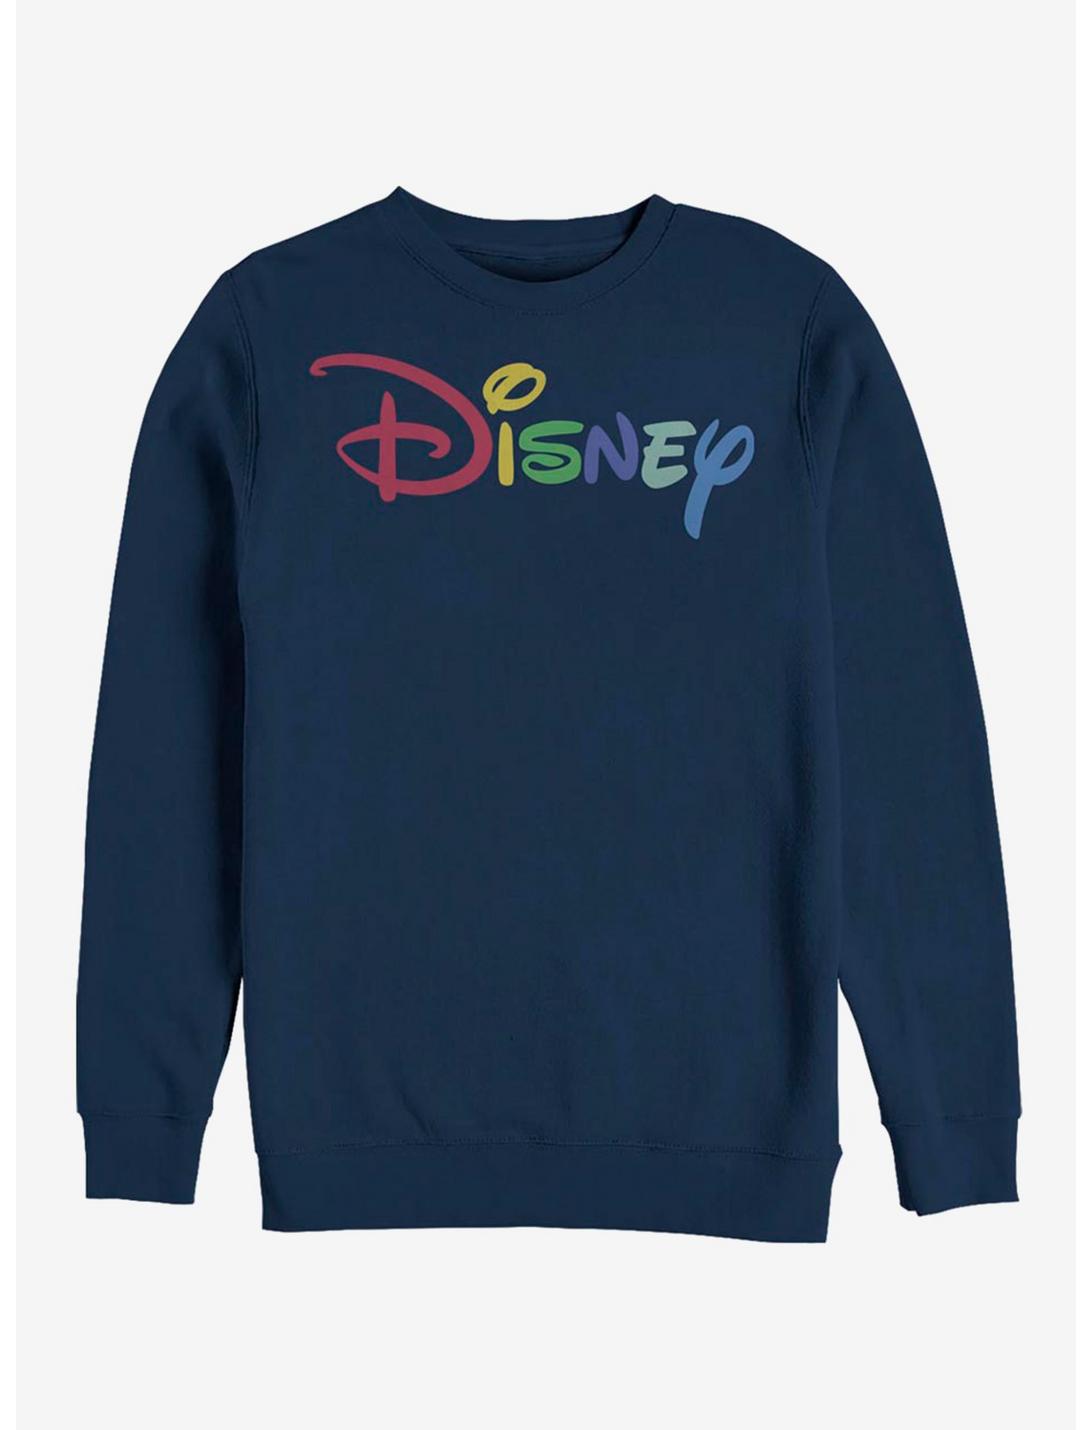 Disney Multicolor Disney Sweatshirt, NAVY, hi-res